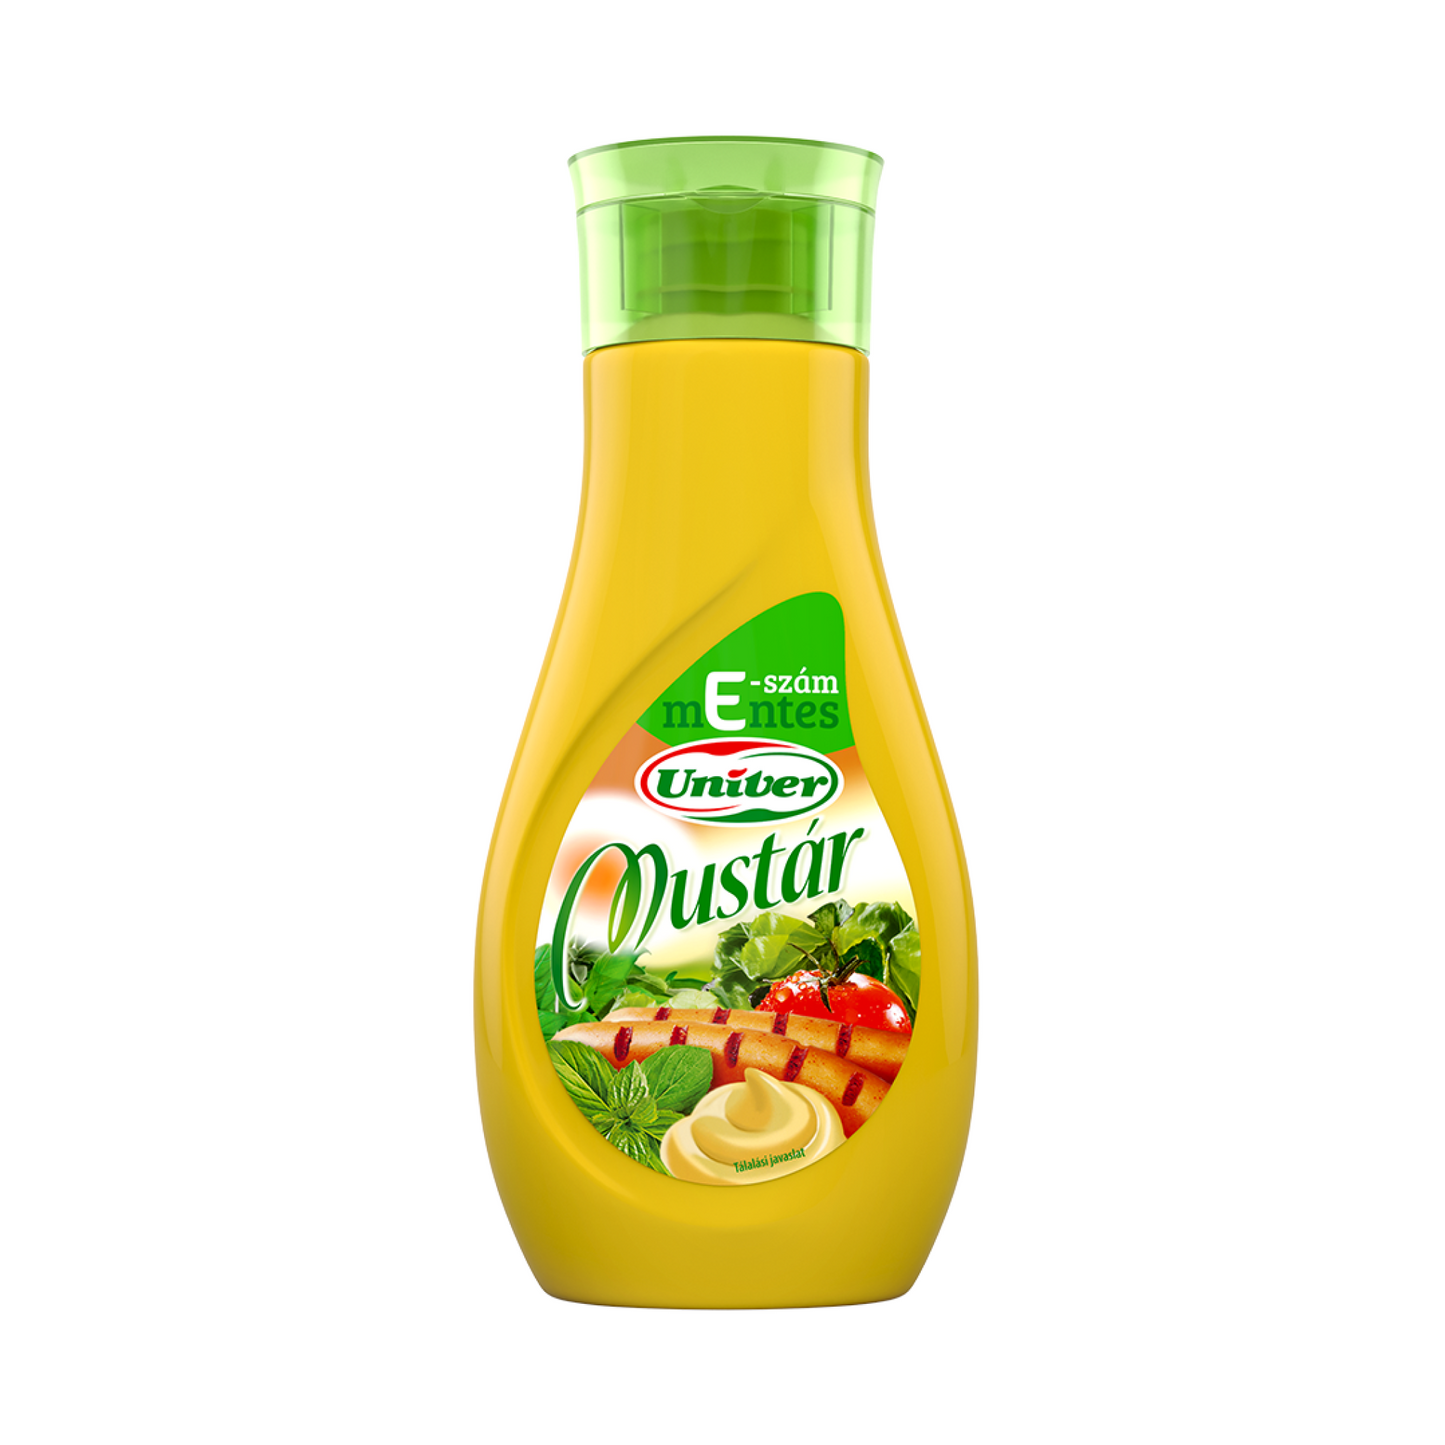 Univer Mustard 440g